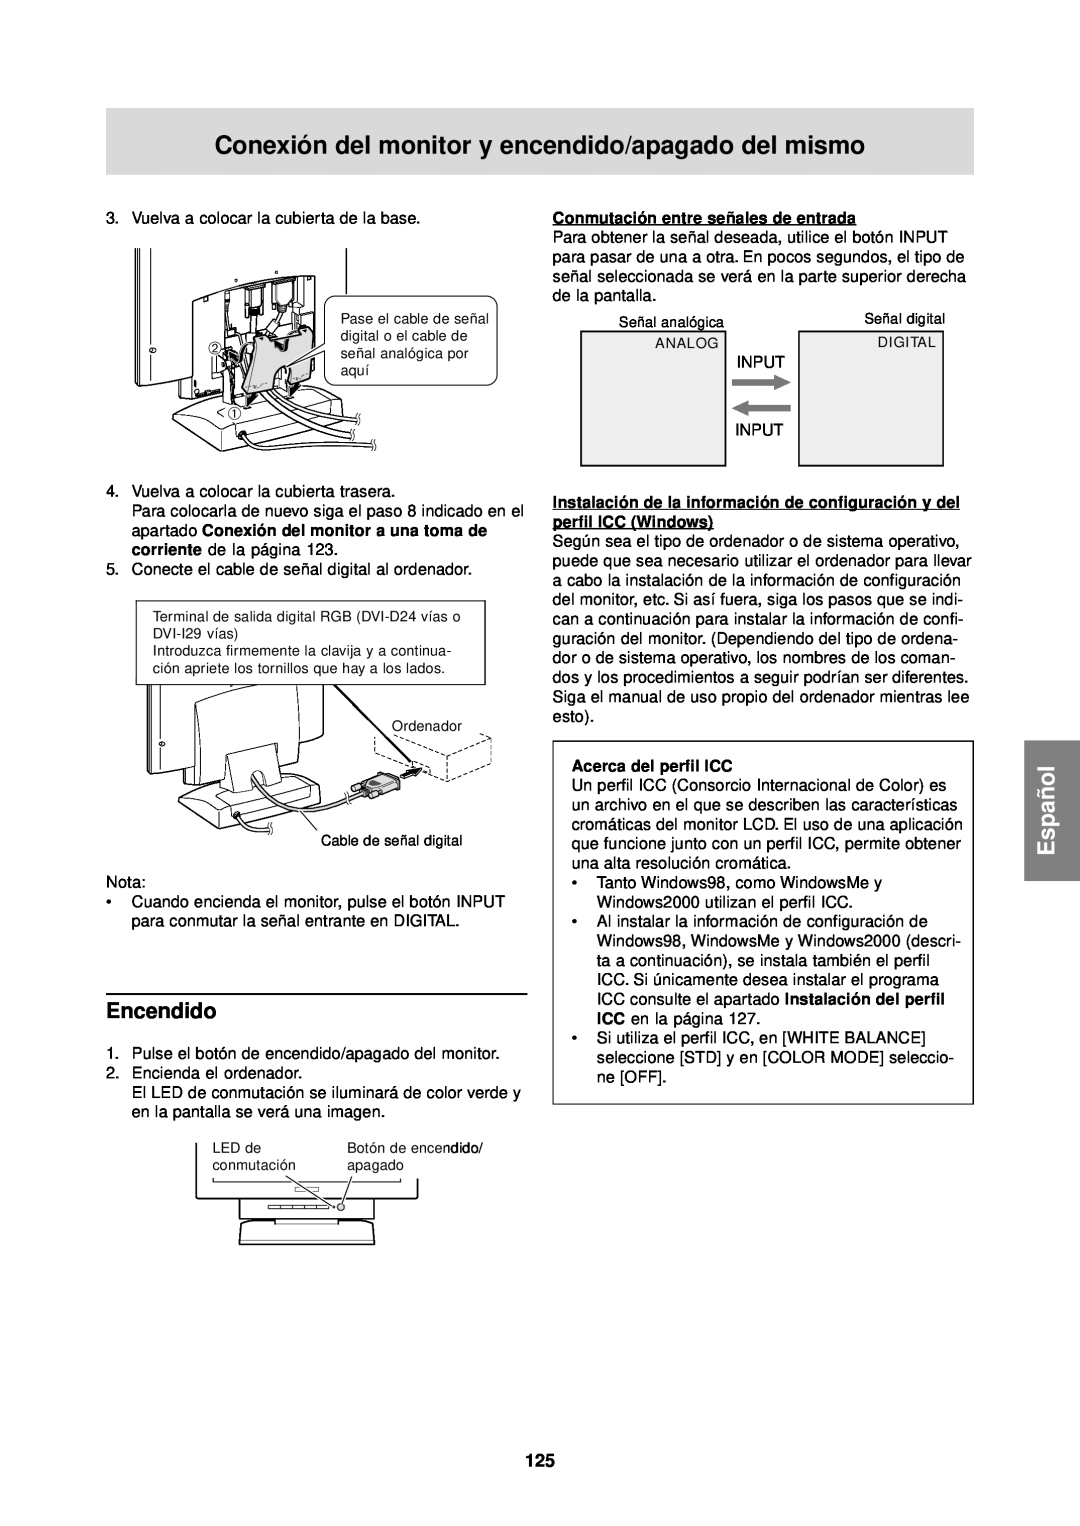 Sharp LL-T1610W operation manual Encendido, Conexión del monitor y encendido/apagado del mismo, Español, perfil ICC Windows 